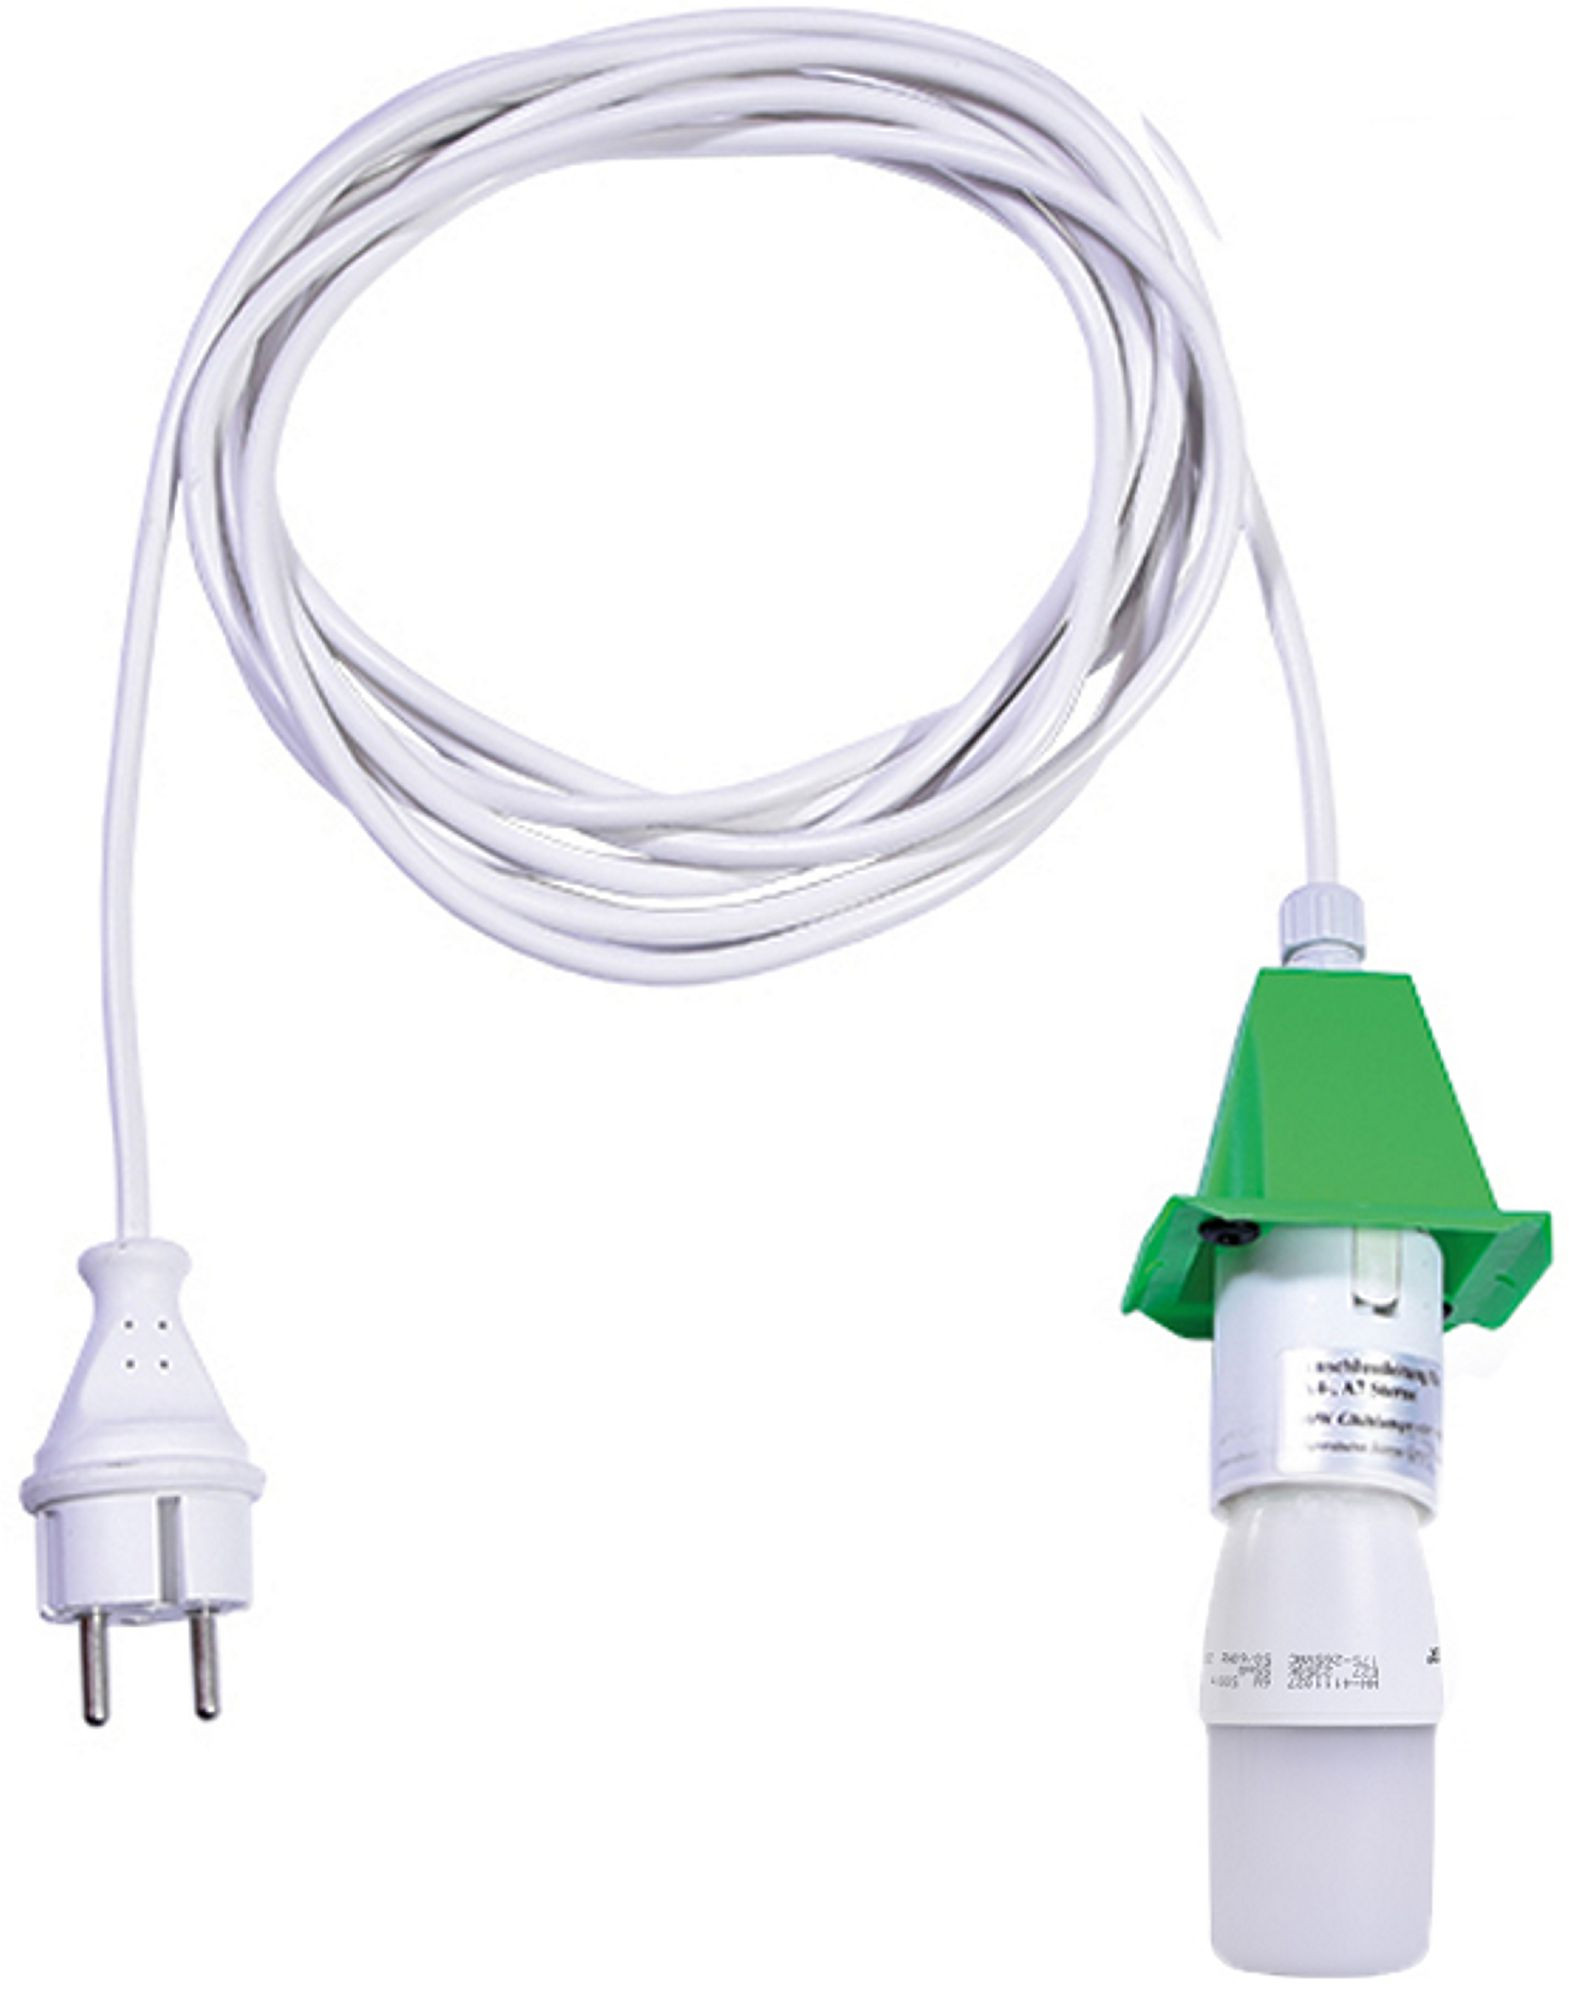 Herrnhuter Kabel für A4/A7 - weißes Kabel 5m grün